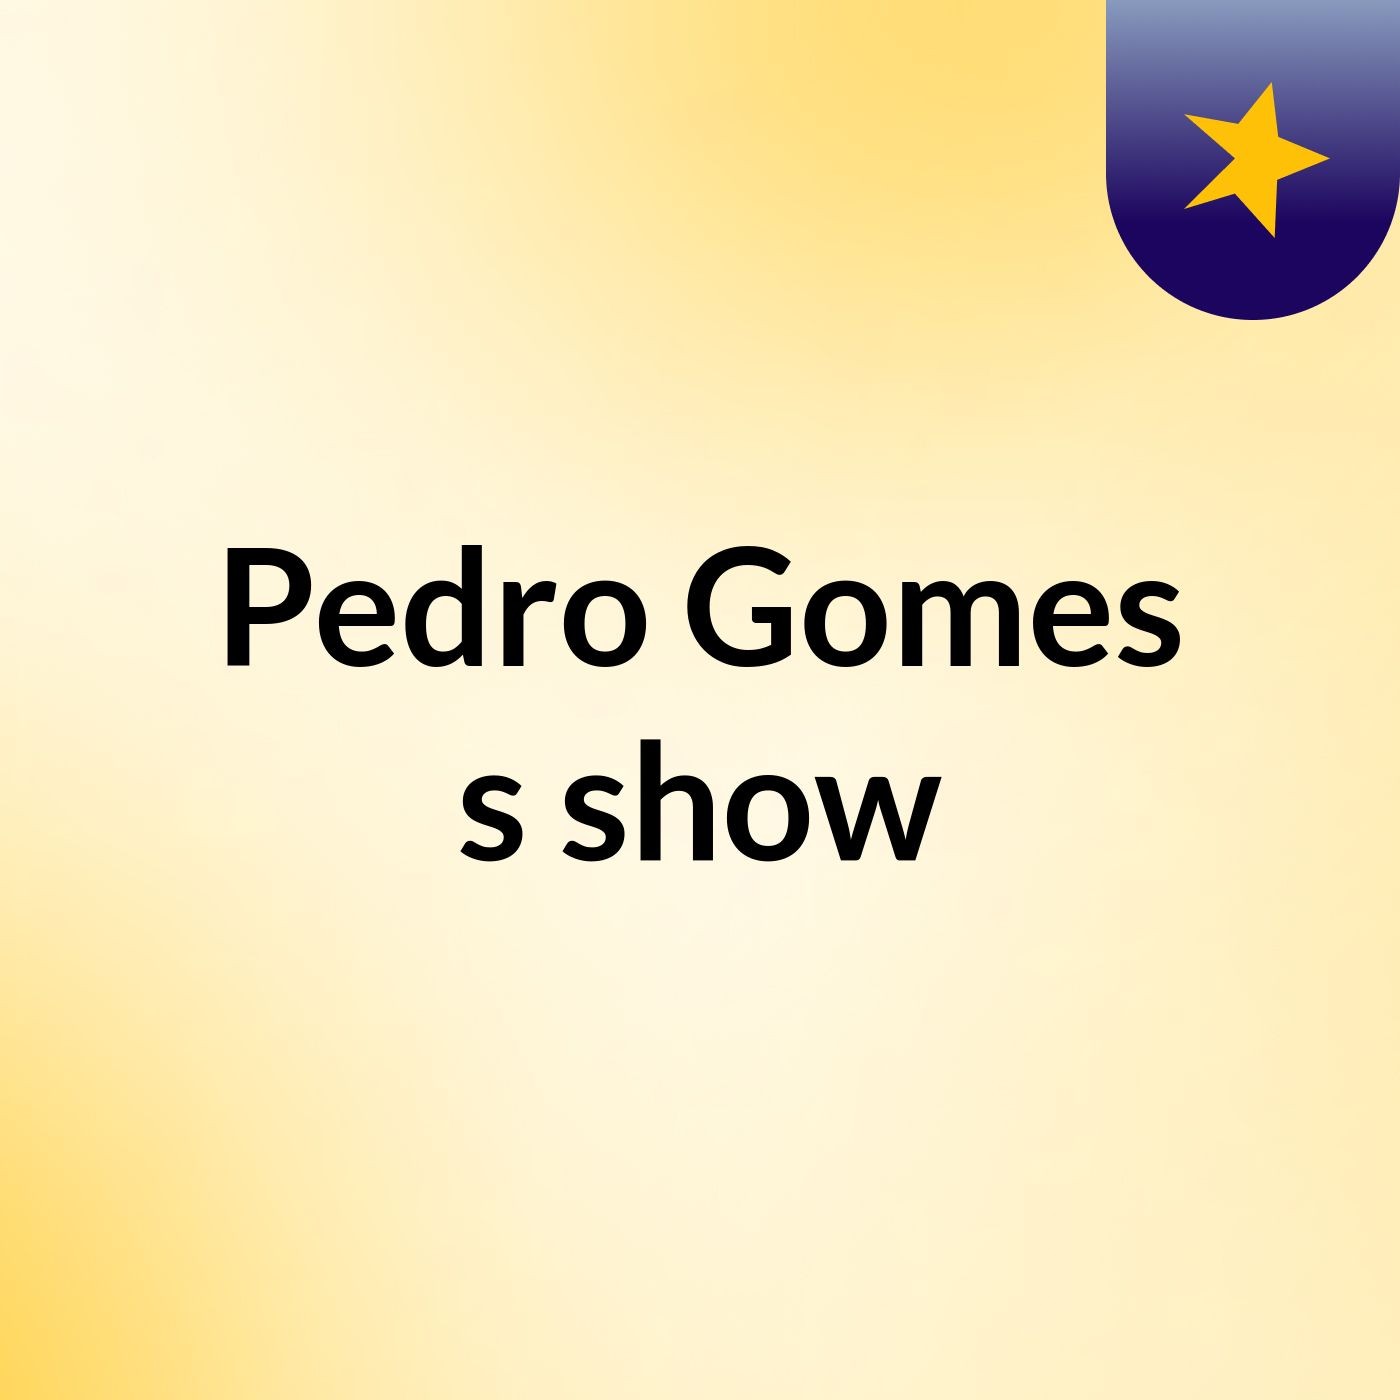 Pedro Gomes's show